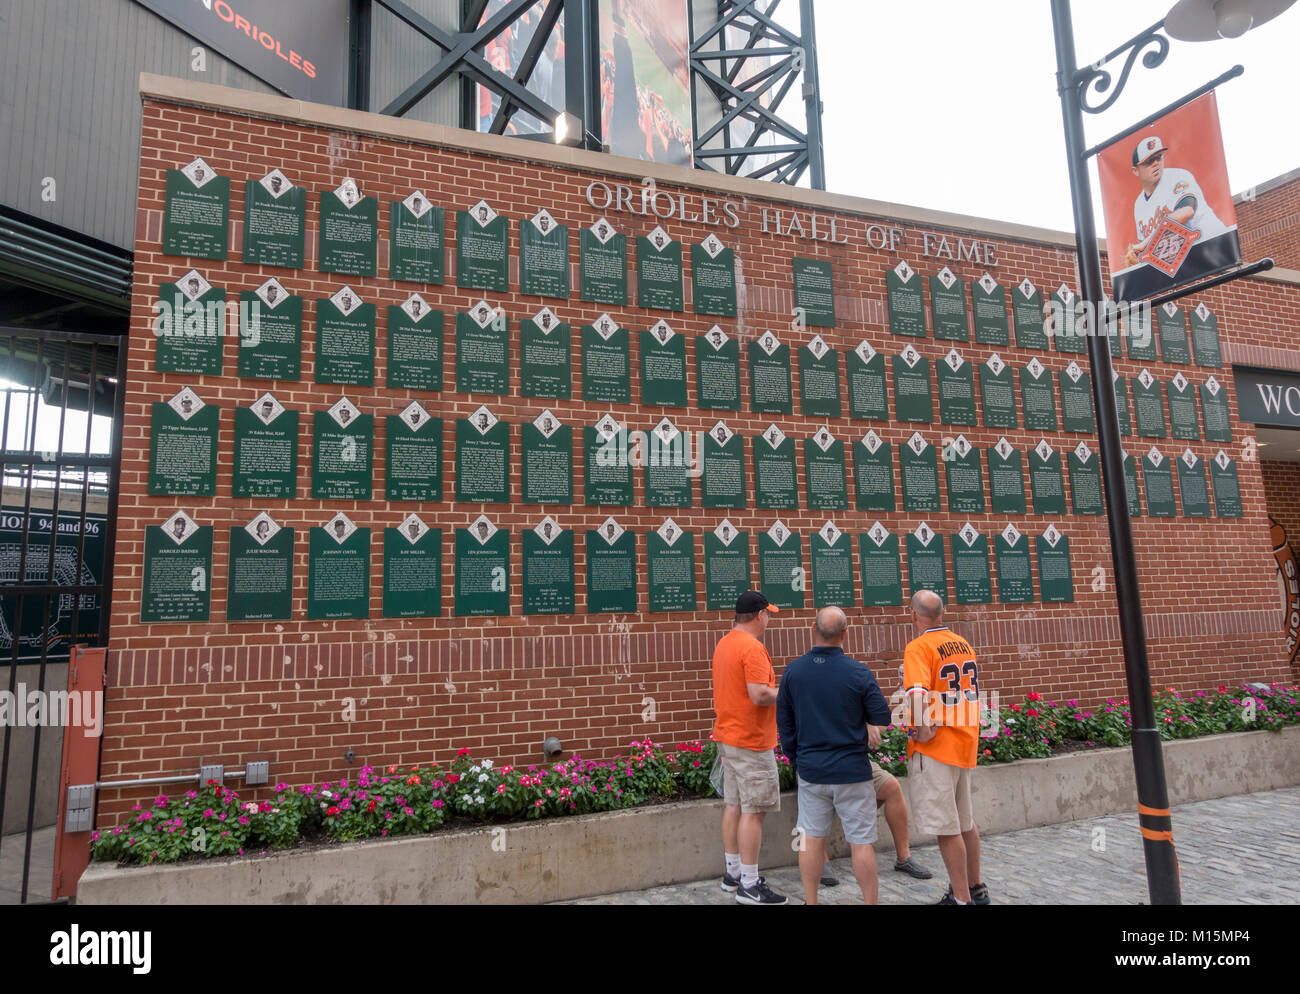 Temple de la renommée des orioles de mur à l'intérieur de l'Oriole Park at Camden Yards, domicile de la Ligue Majeure de Baseball Des Orioles de Baltimore, dans l'équipe de Baltimore, Maryland, USA. Banque D'Images